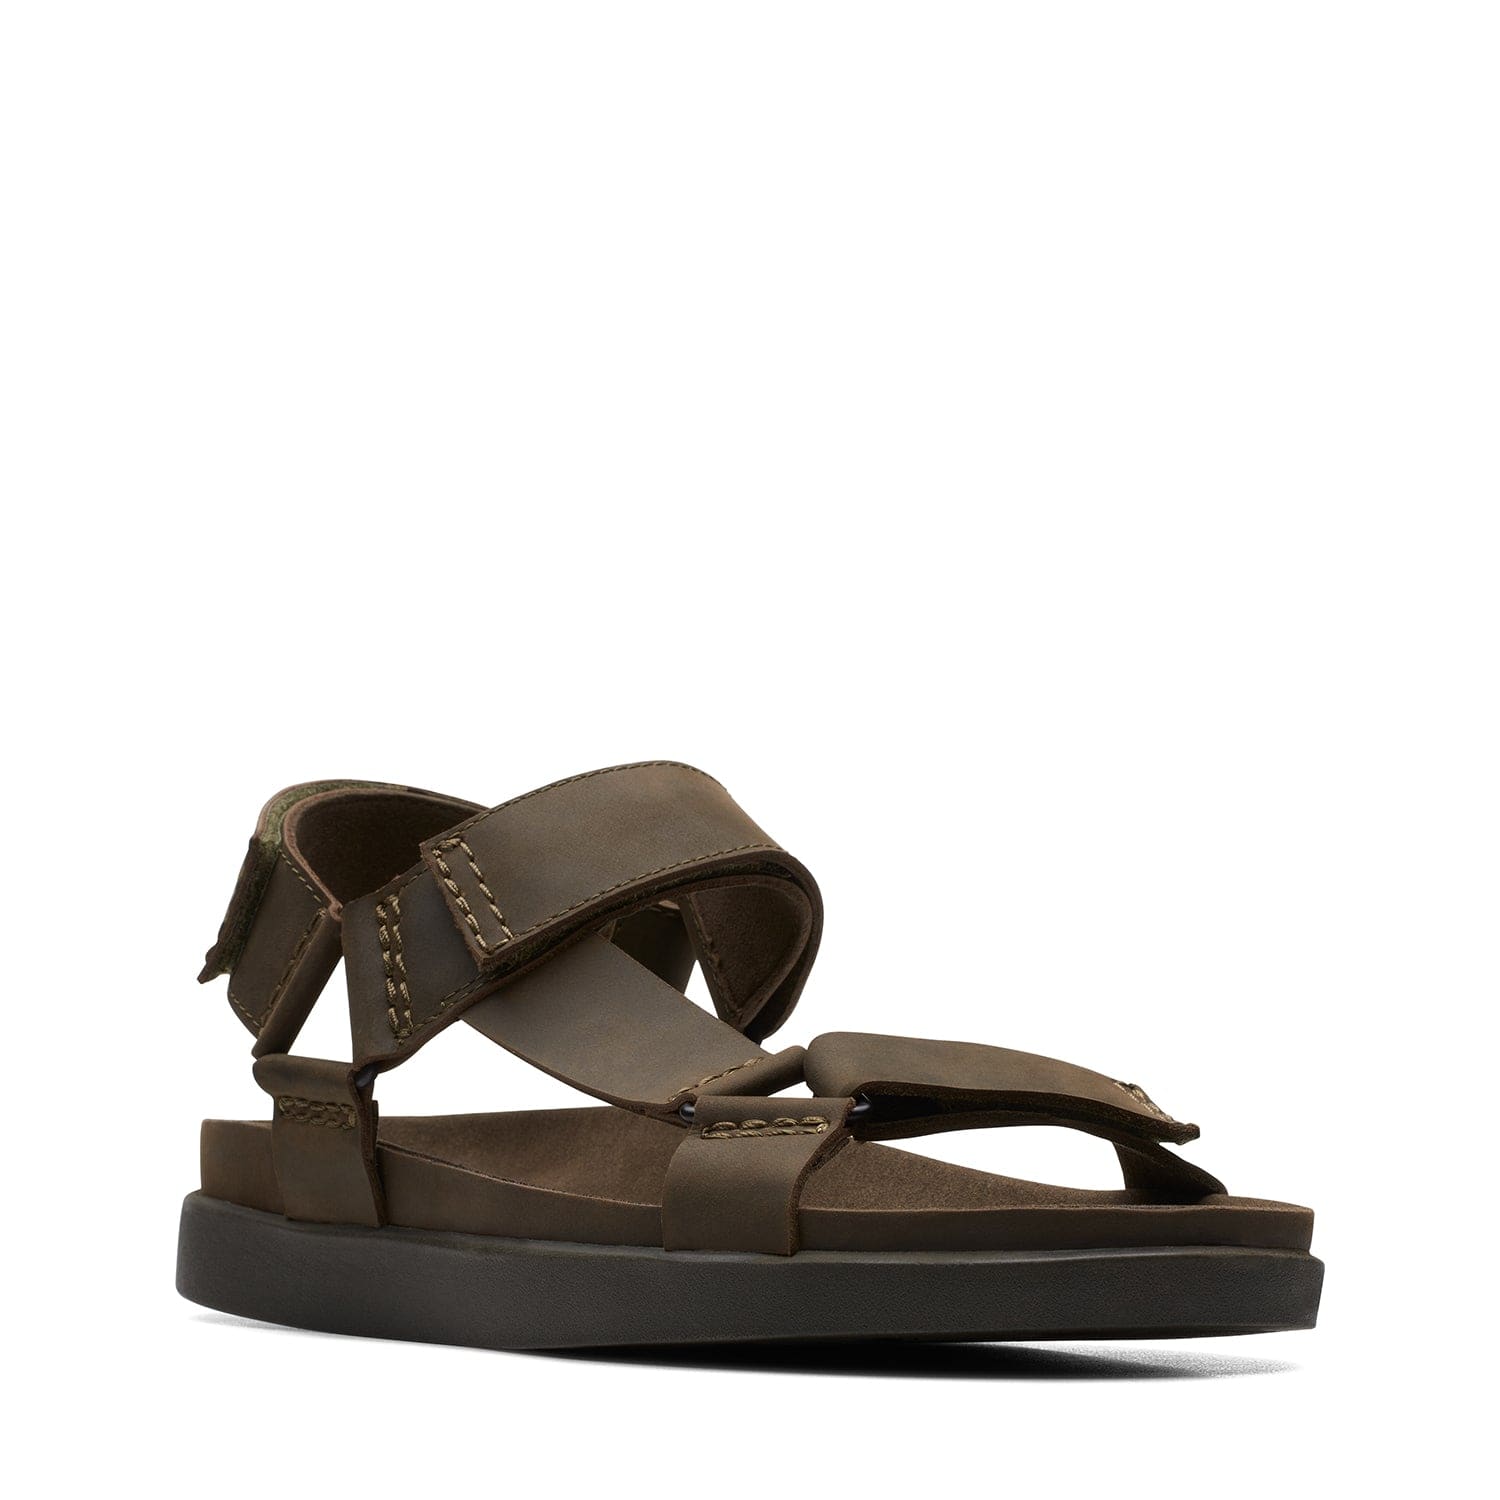 Clarks Sunder Range - Sandals - Dark Olive Lea - 261718877 - G Width (Standard Fit)